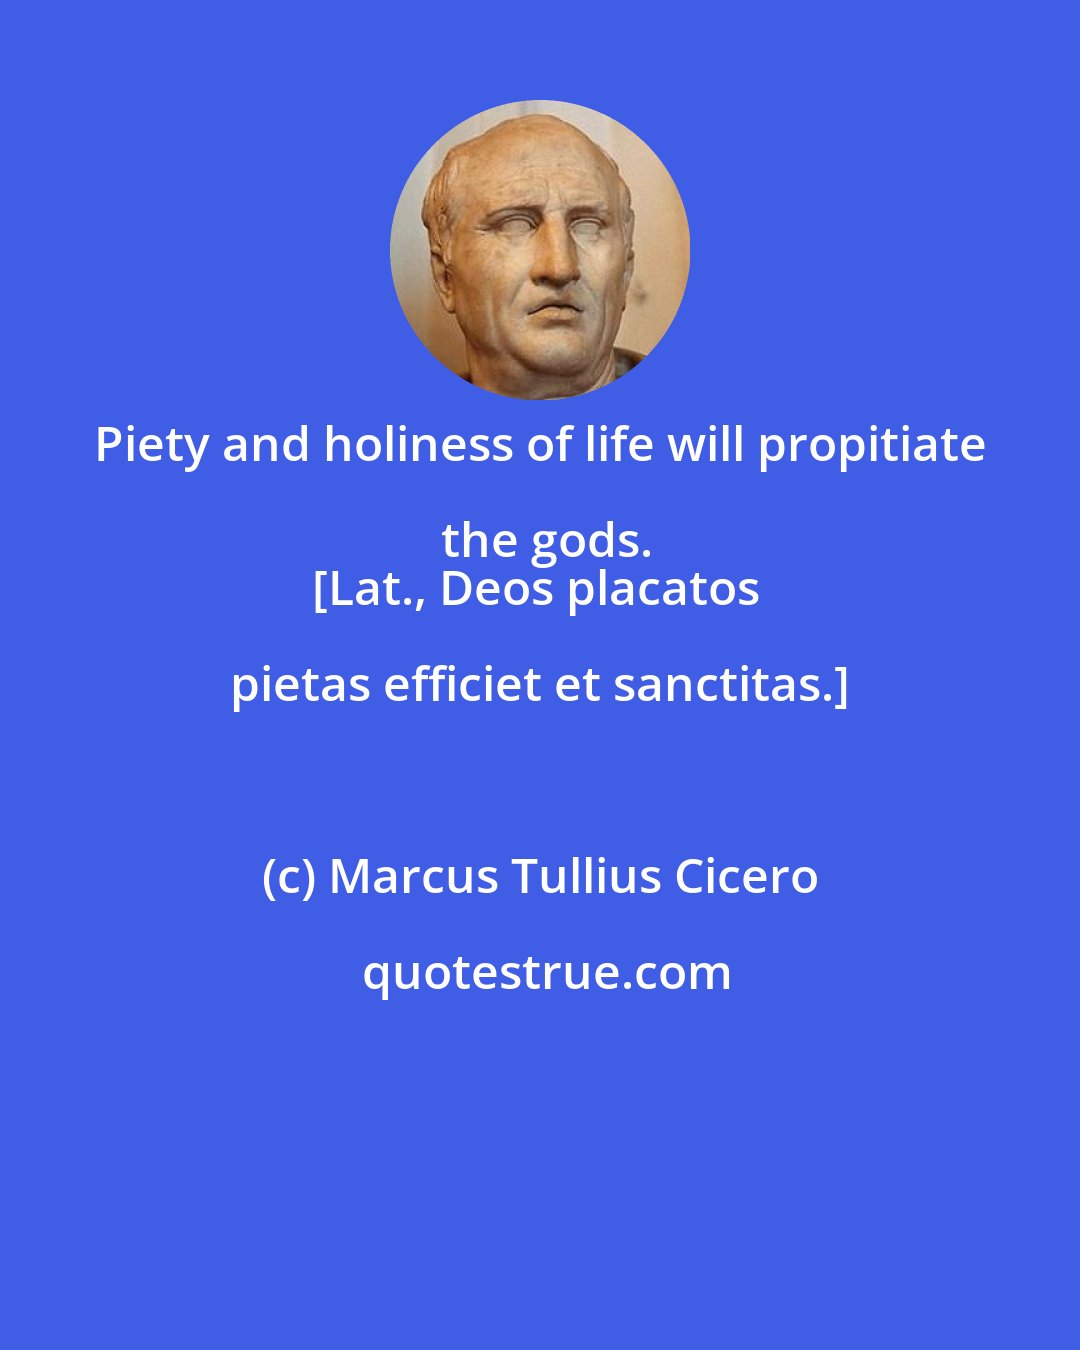 Marcus Tullius Cicero: Piety and holiness of life will propitiate the gods.
[Lat., Deos placatos pietas efficiet et sanctitas.]